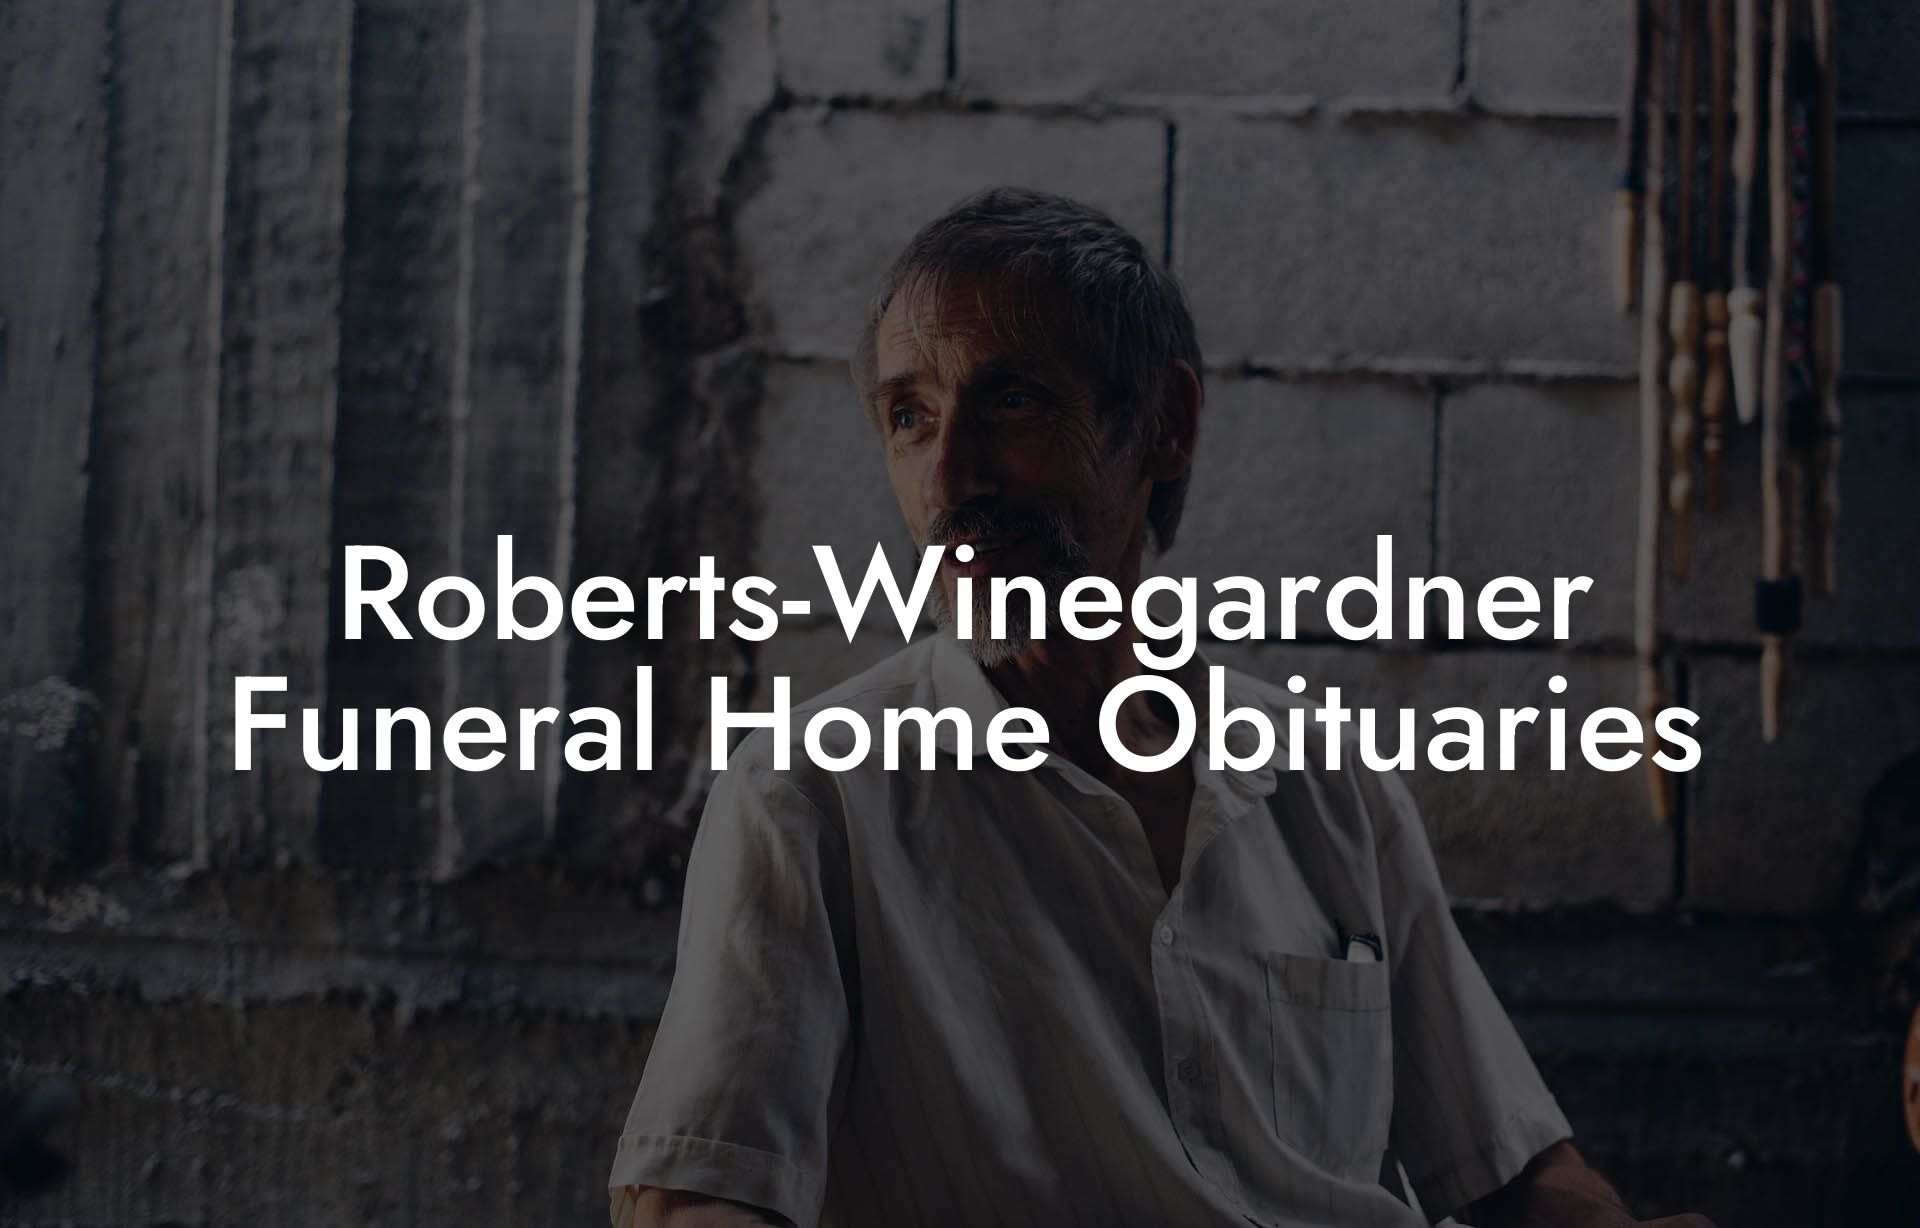 Roberts-Winegardner Funeral Home Obituaries